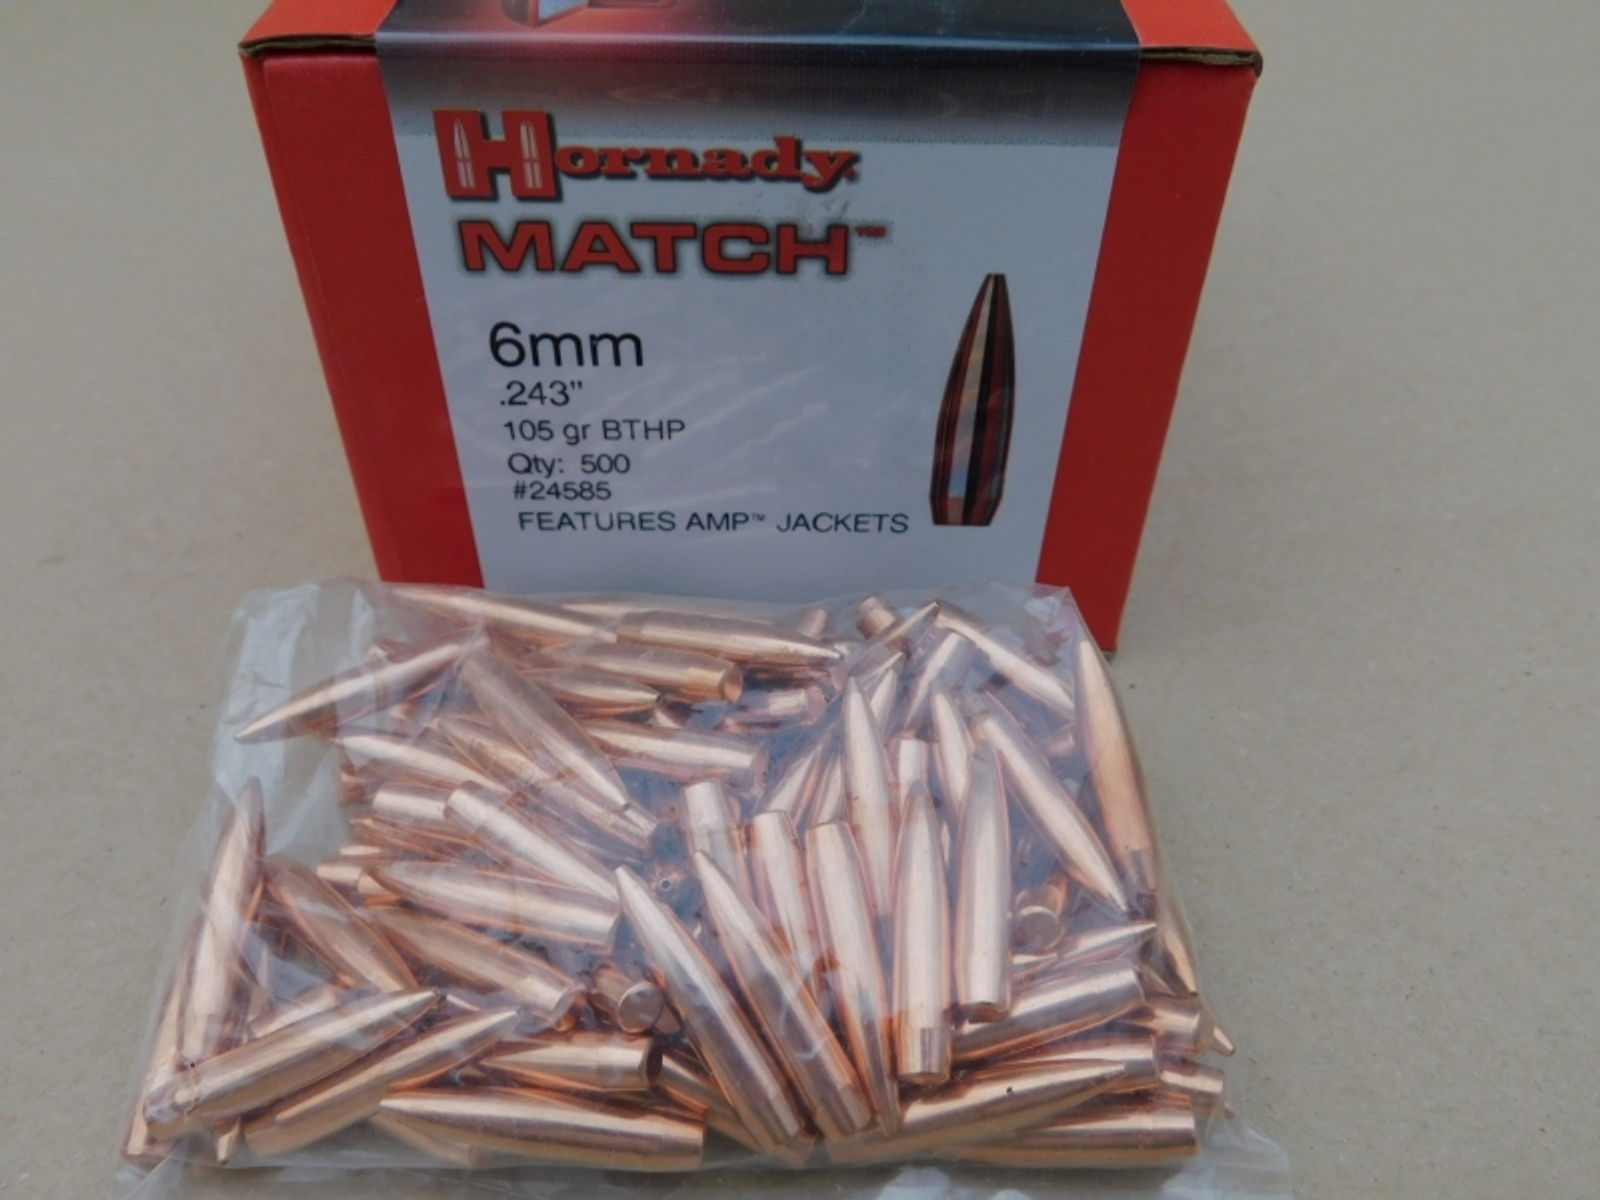 6mm.243/105 grs HPBT Hornady Match 100 stk No. 24585